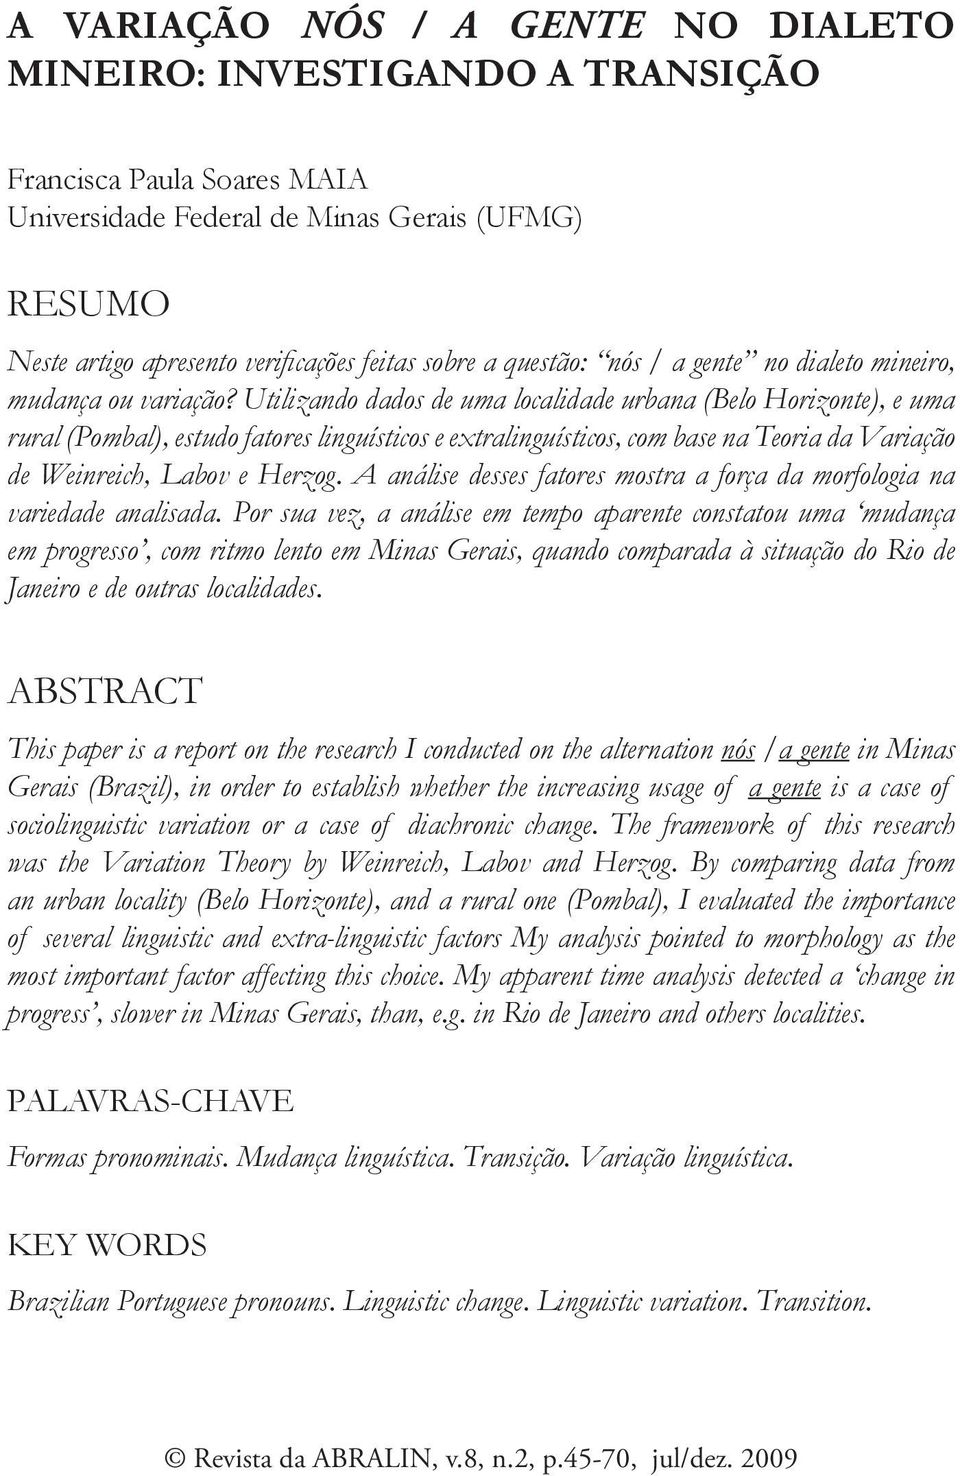 Utilizando dados de uma localidade urbana (Belo Horizonte), e uma rural (Pombal), estudo fatores linguísticos e extralinguísticos, com base na Teoria da Variação de Weinreich, Labov e Herzog.